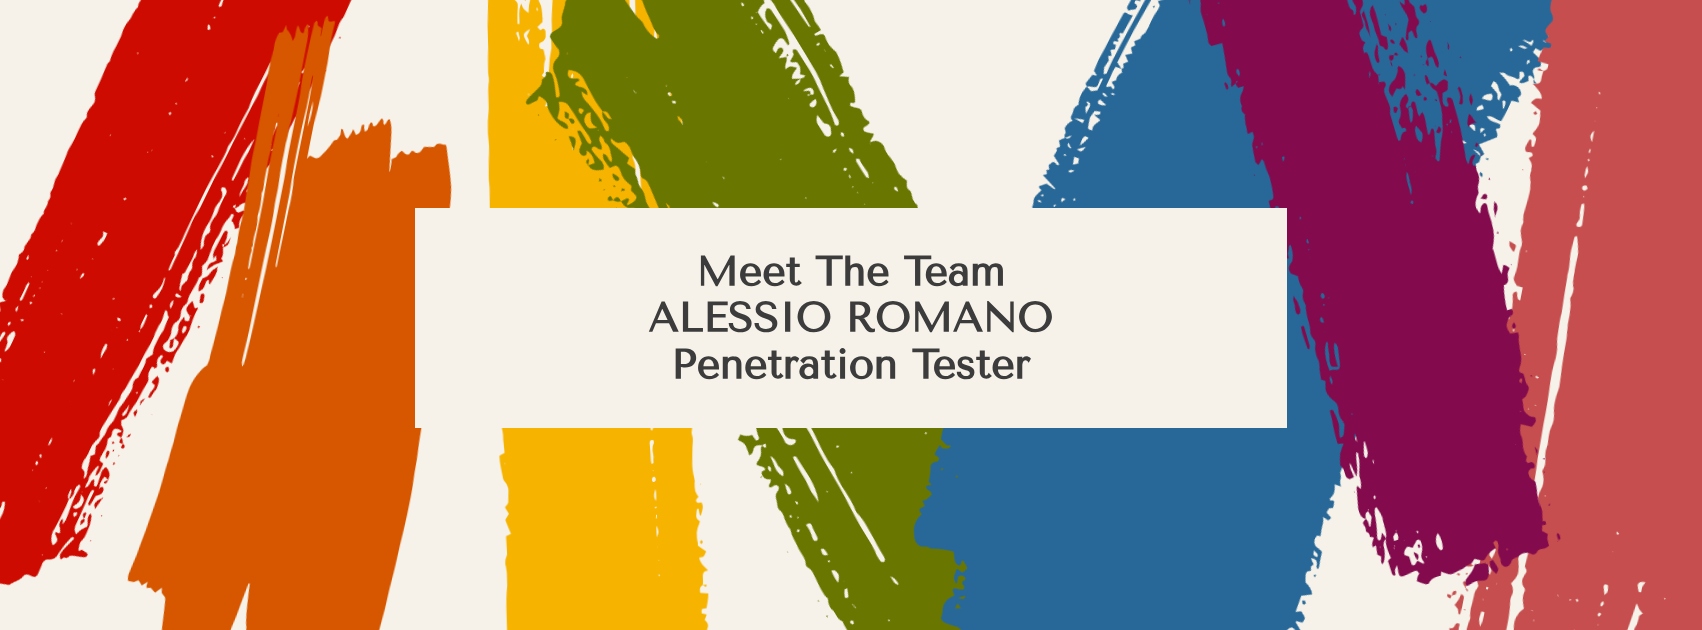 Conosciamo Alessio Romano – Penetration Tester